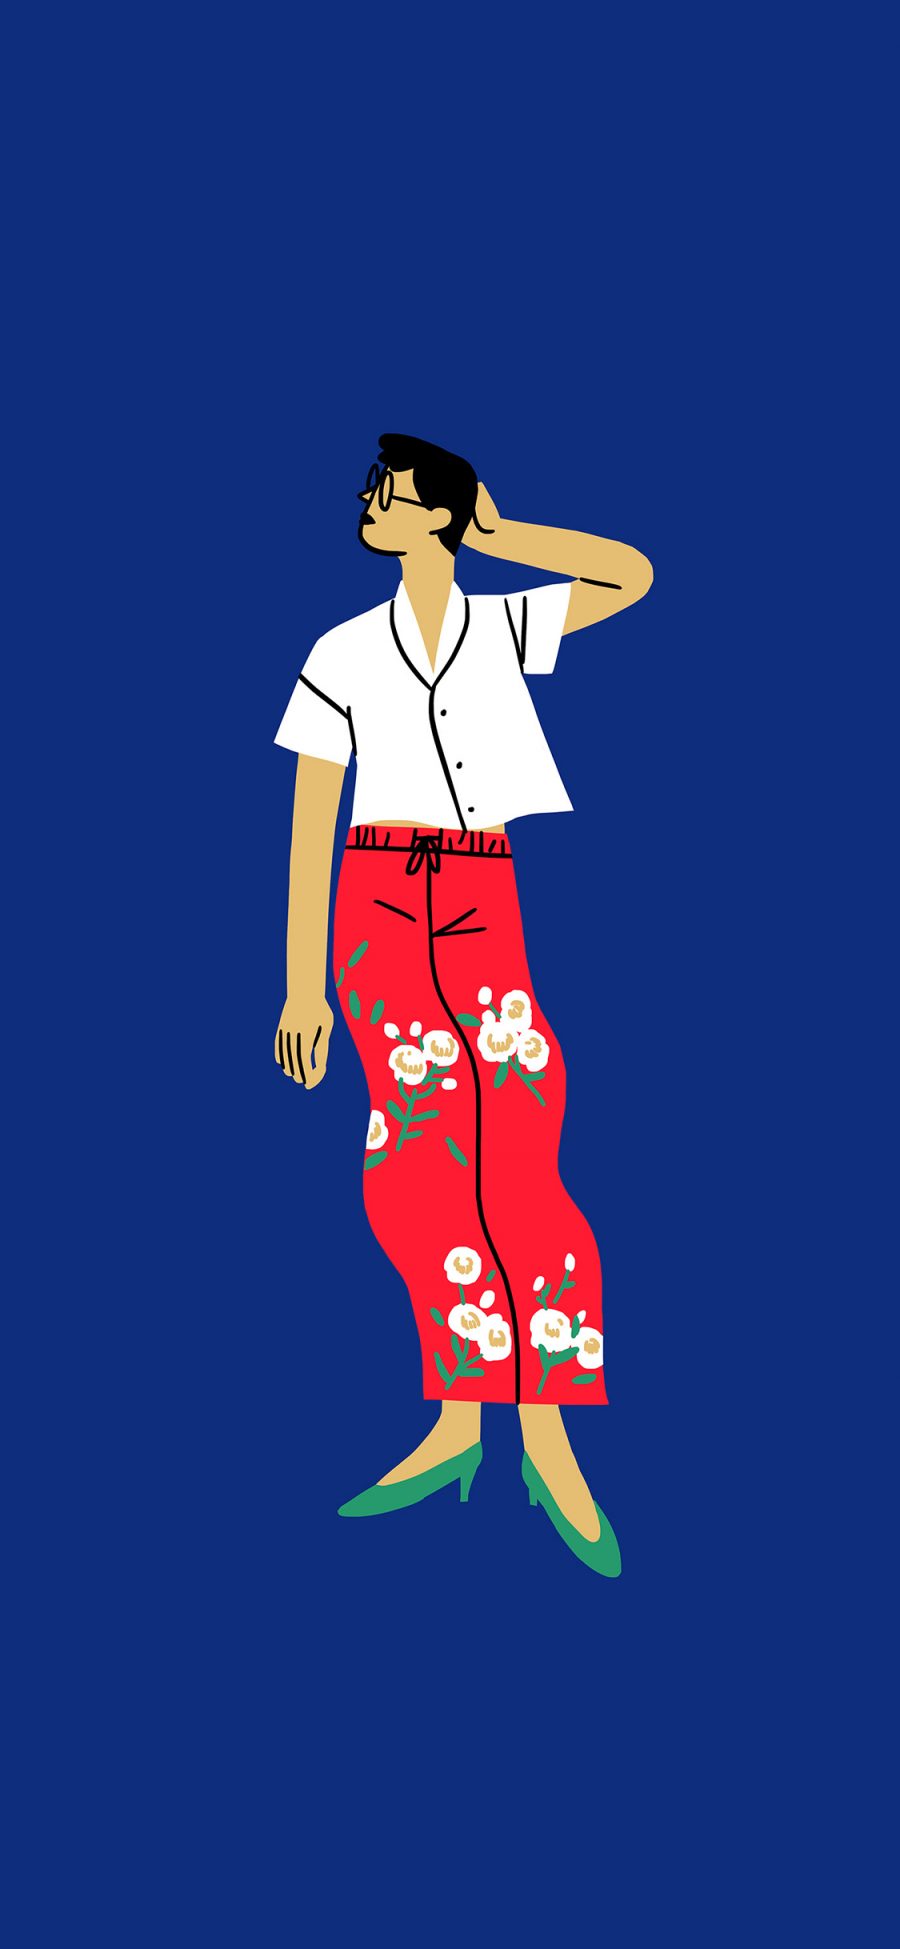 [2436×1125]插图 简笔 时尚 服装 搭配 红蓝 苹果手机动漫壁纸图片